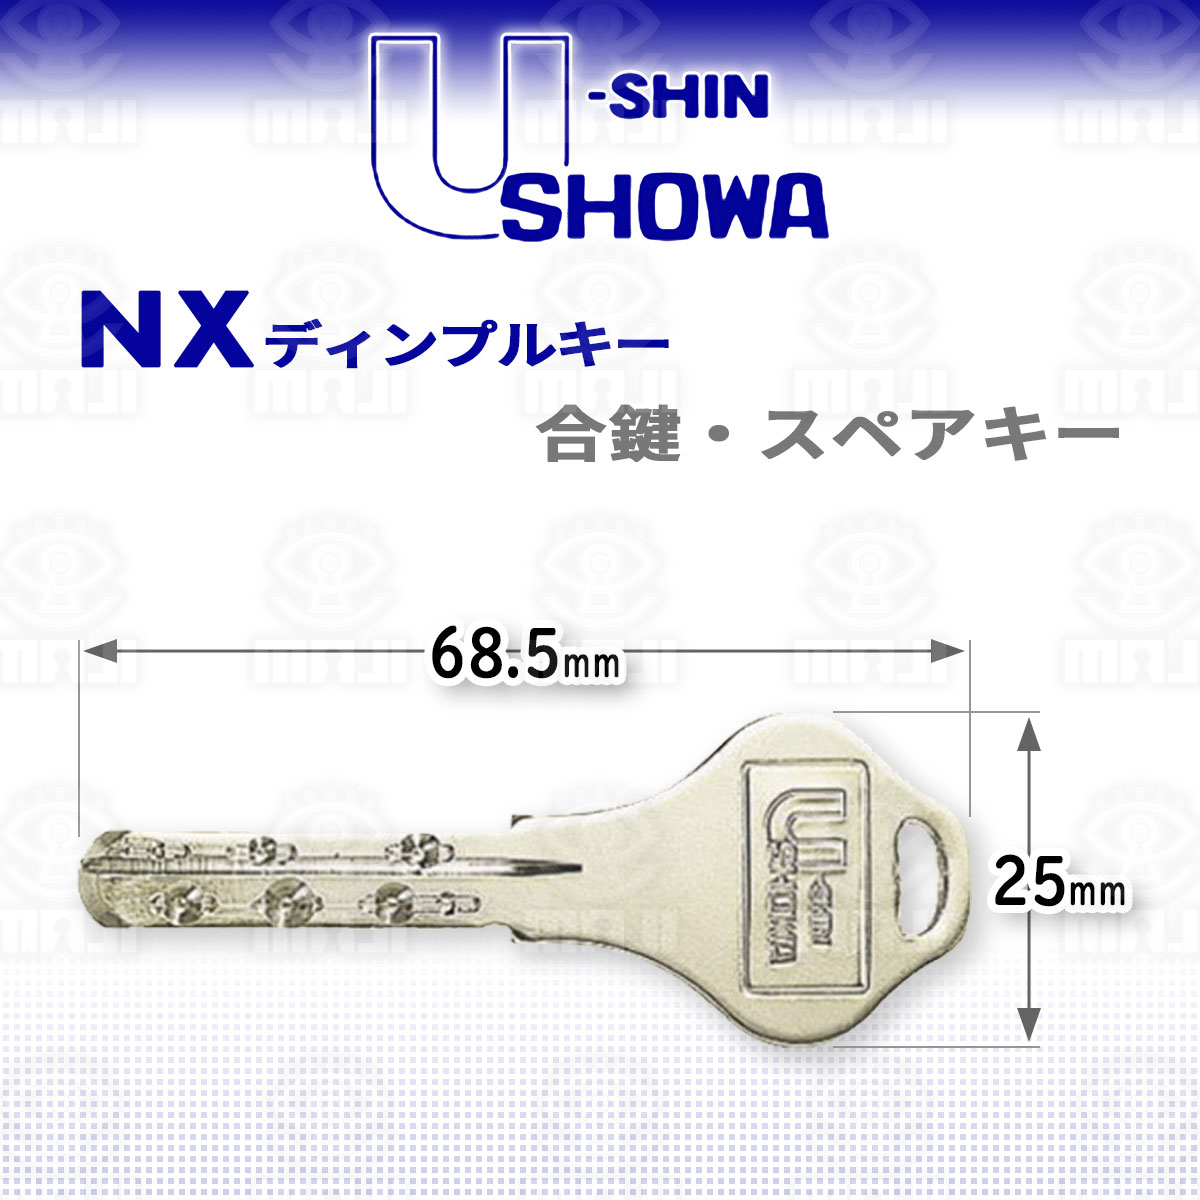 U Shinshowa ユーシンショウワ 鍵の卸売センター Nx ディンプルキー鍵 スペアキー